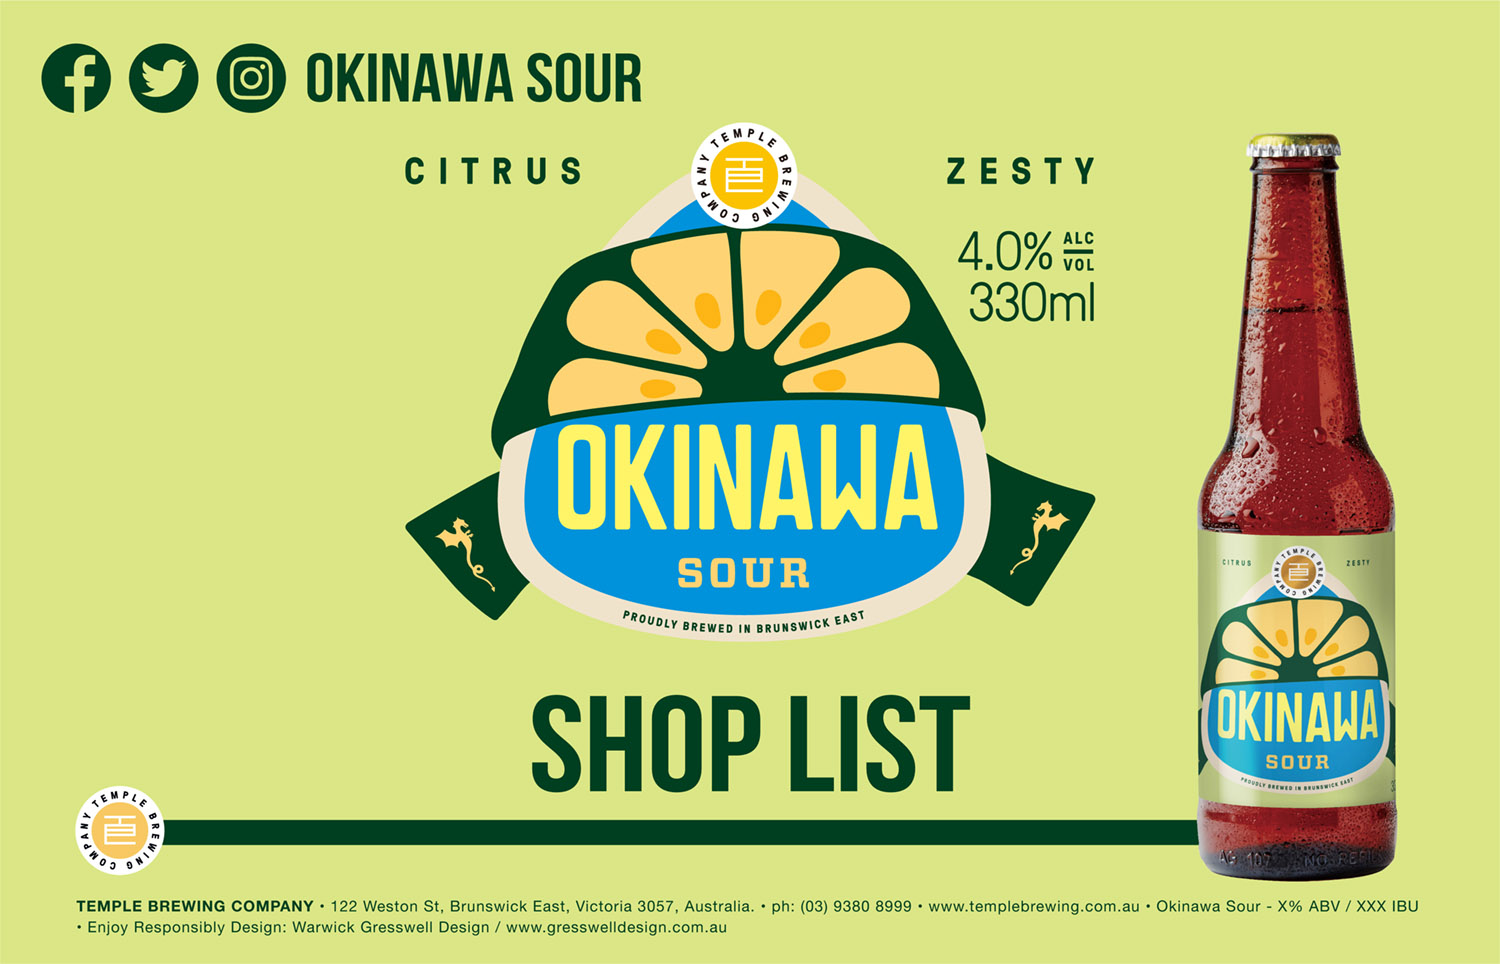 OKINAWA SOUR - SHOP LIST